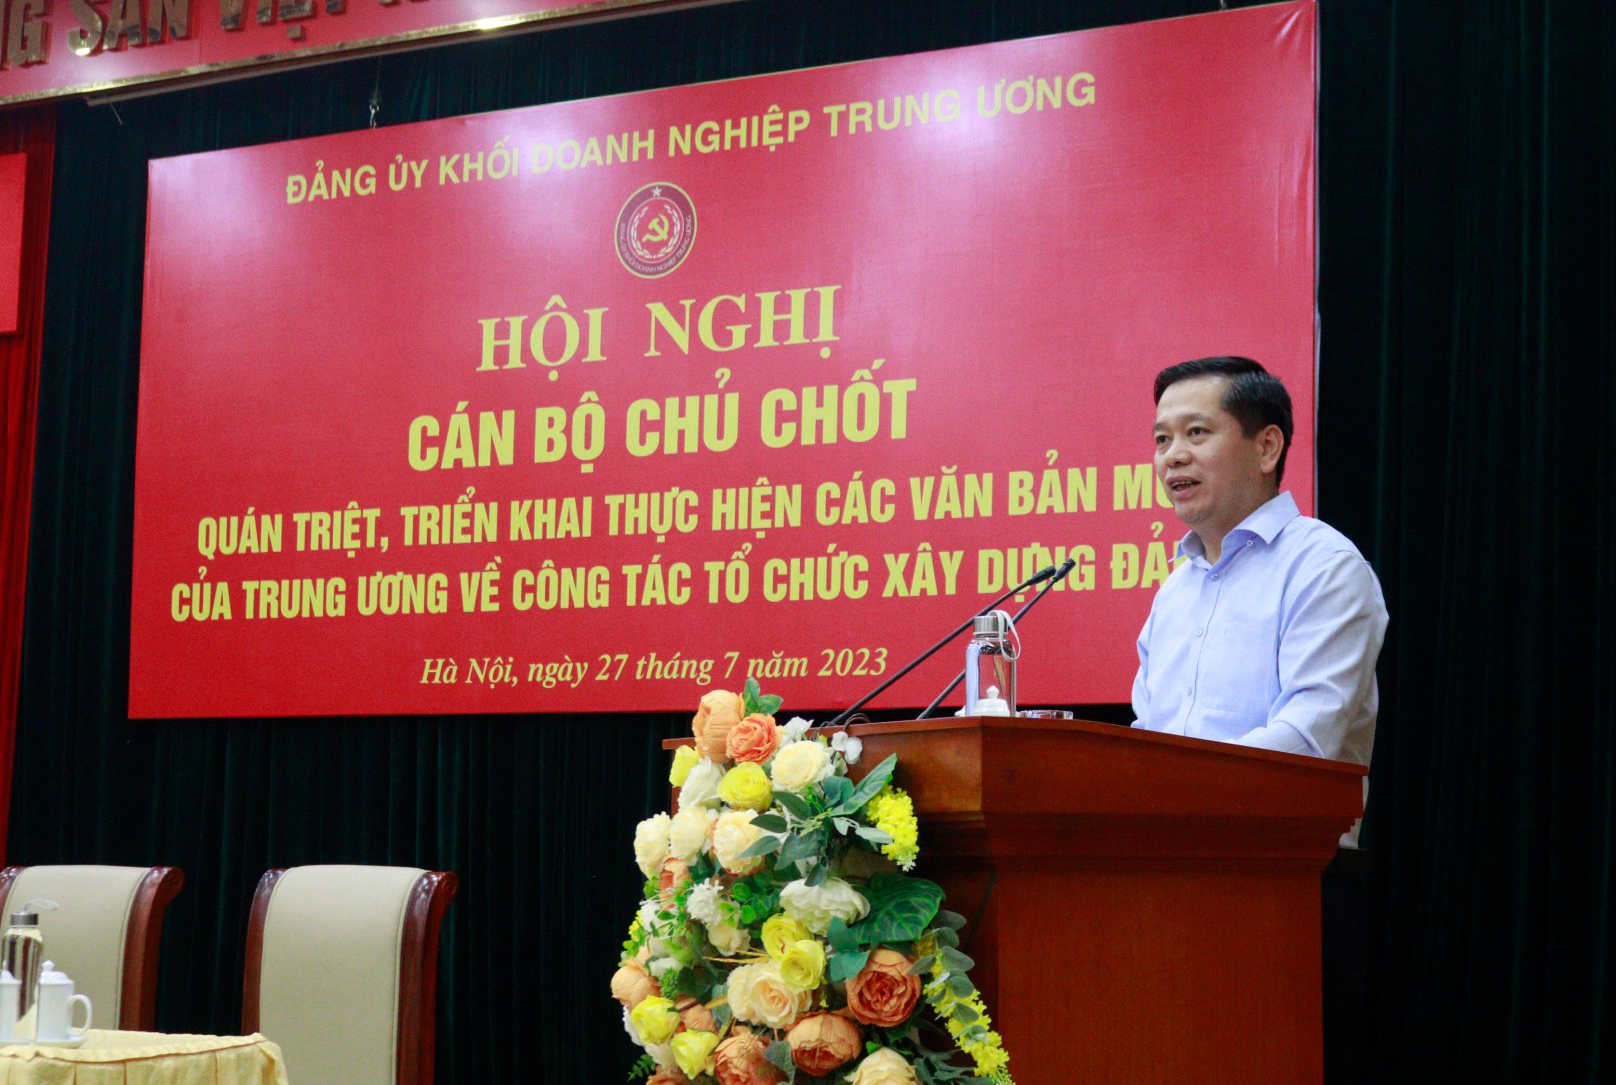 Đồng chí Nguyễn Long Hải, Ủy viên dự khuyết Trung ương Đảng, Bí thư Đảng ủy Khối Doanh nghiệp Trung ương  phát biểu tại Hội nghị.